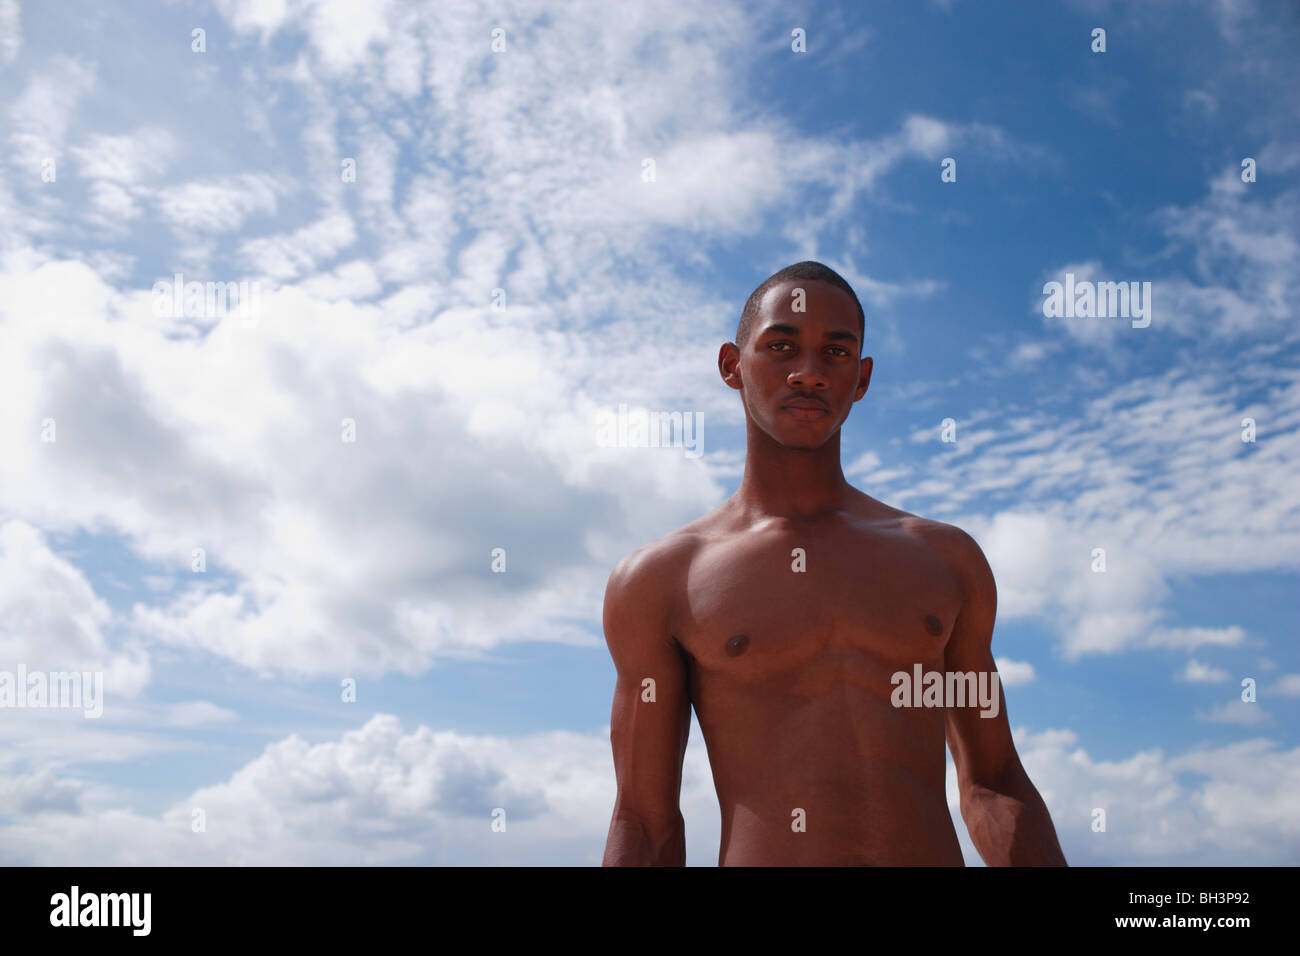 Junge nackte Oberkörper Mann gegen einen blauen Wolkenhimmel Stockfoto